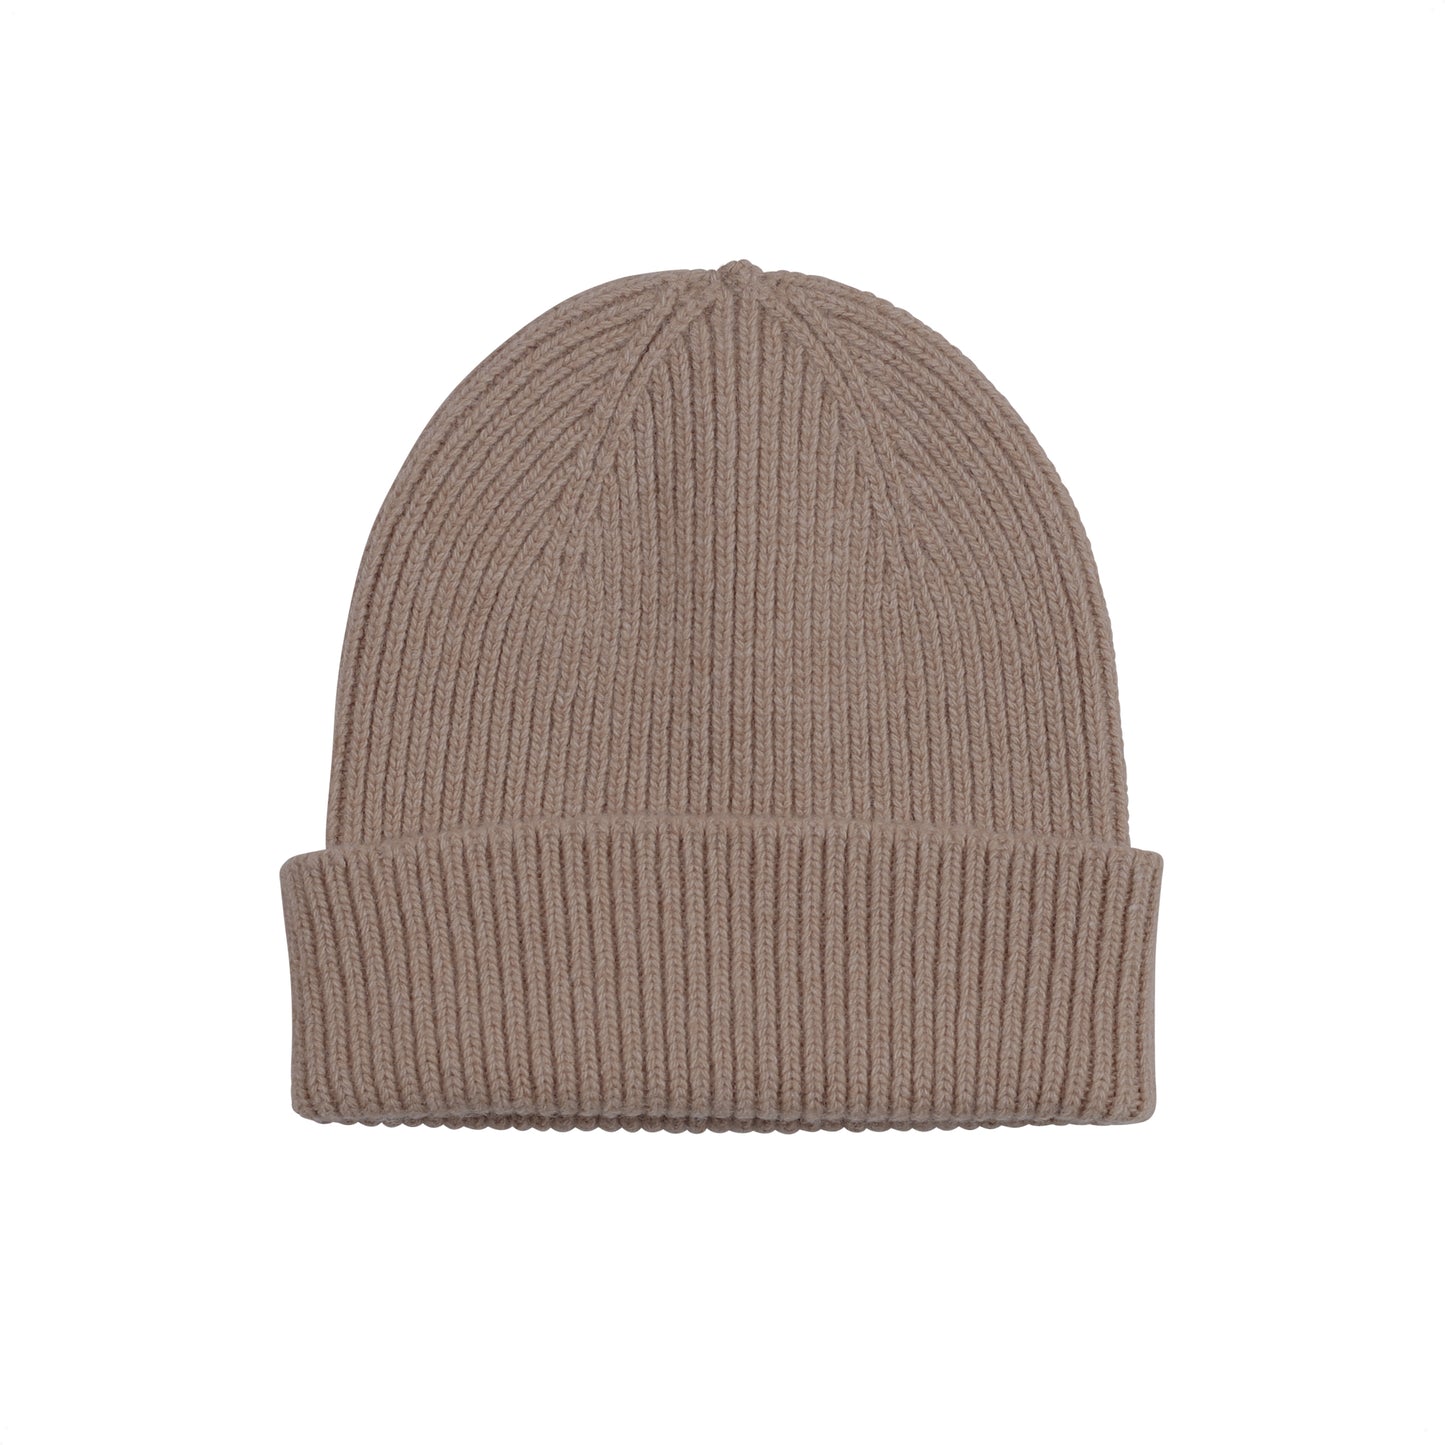 
                  
                    Warm Taupe Merino Wool Beanie Hat
                  
                